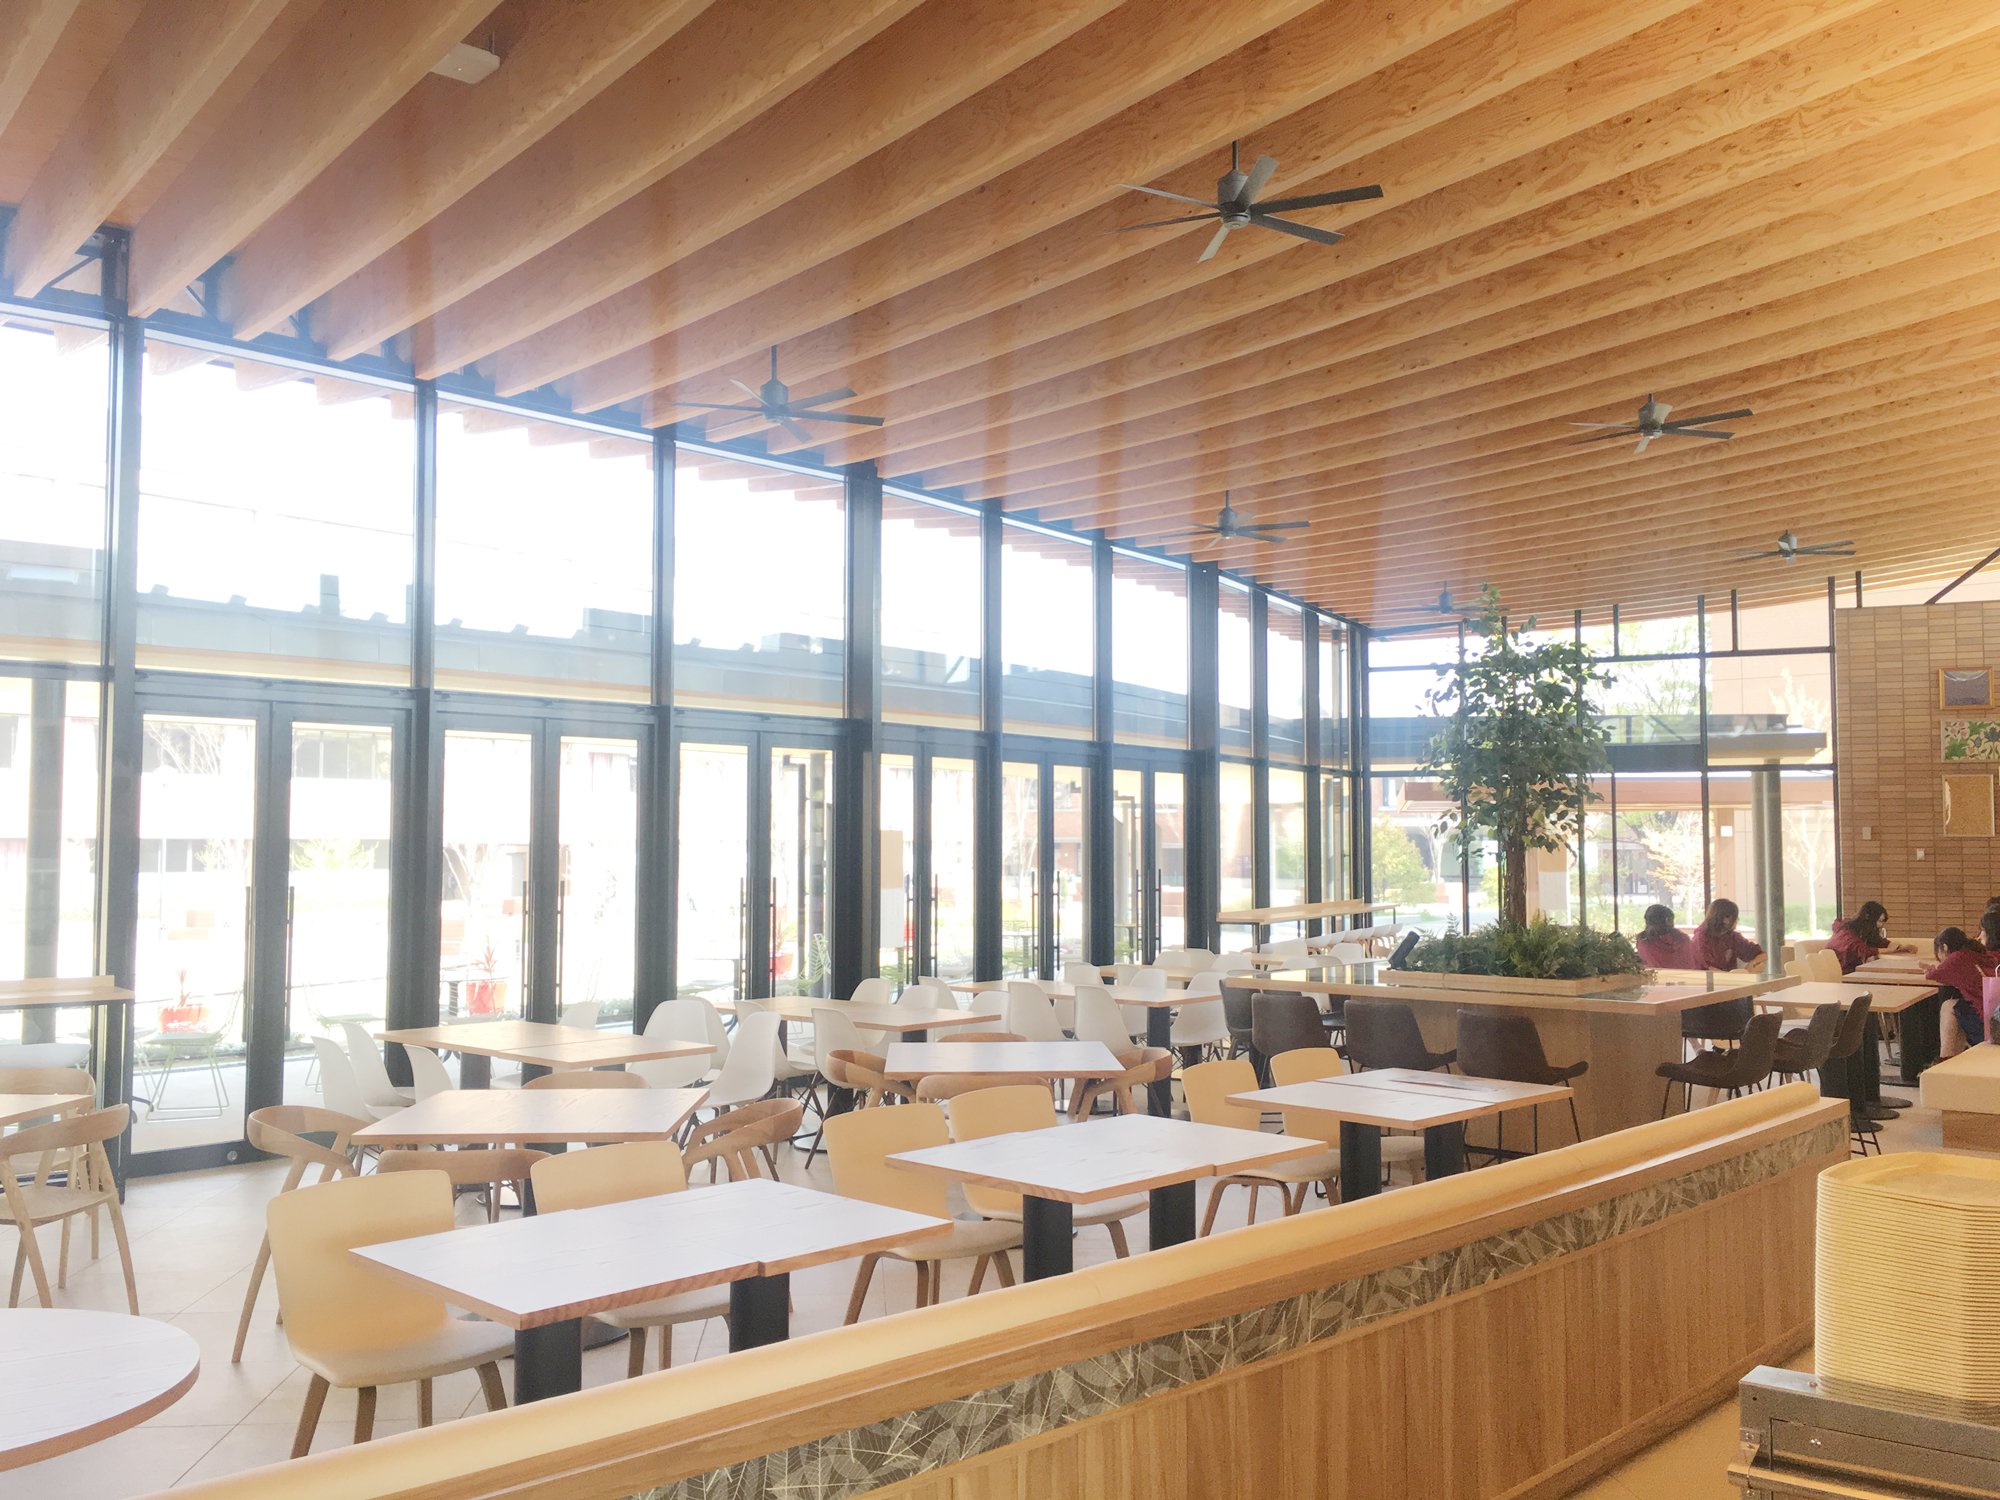 同志社女子大学広報部 完成した食堂棟である恵愛館を写真でご紹介っ その 建物の壁面や屋根にガラスや木材を多く用いることにより 明るく開放的な食堂空間となっています